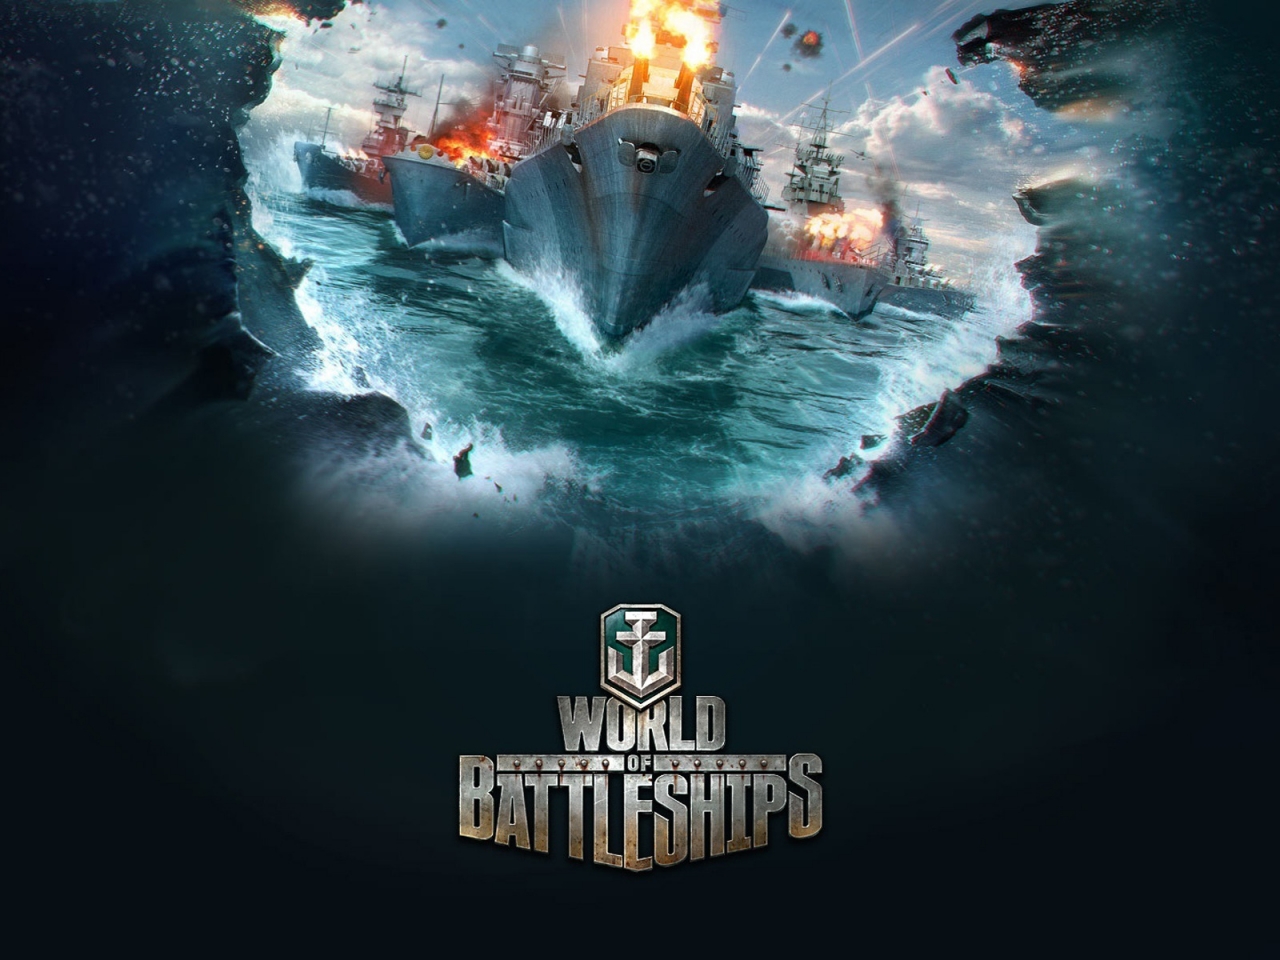 World of Battleships for 1280 x 960 resolution